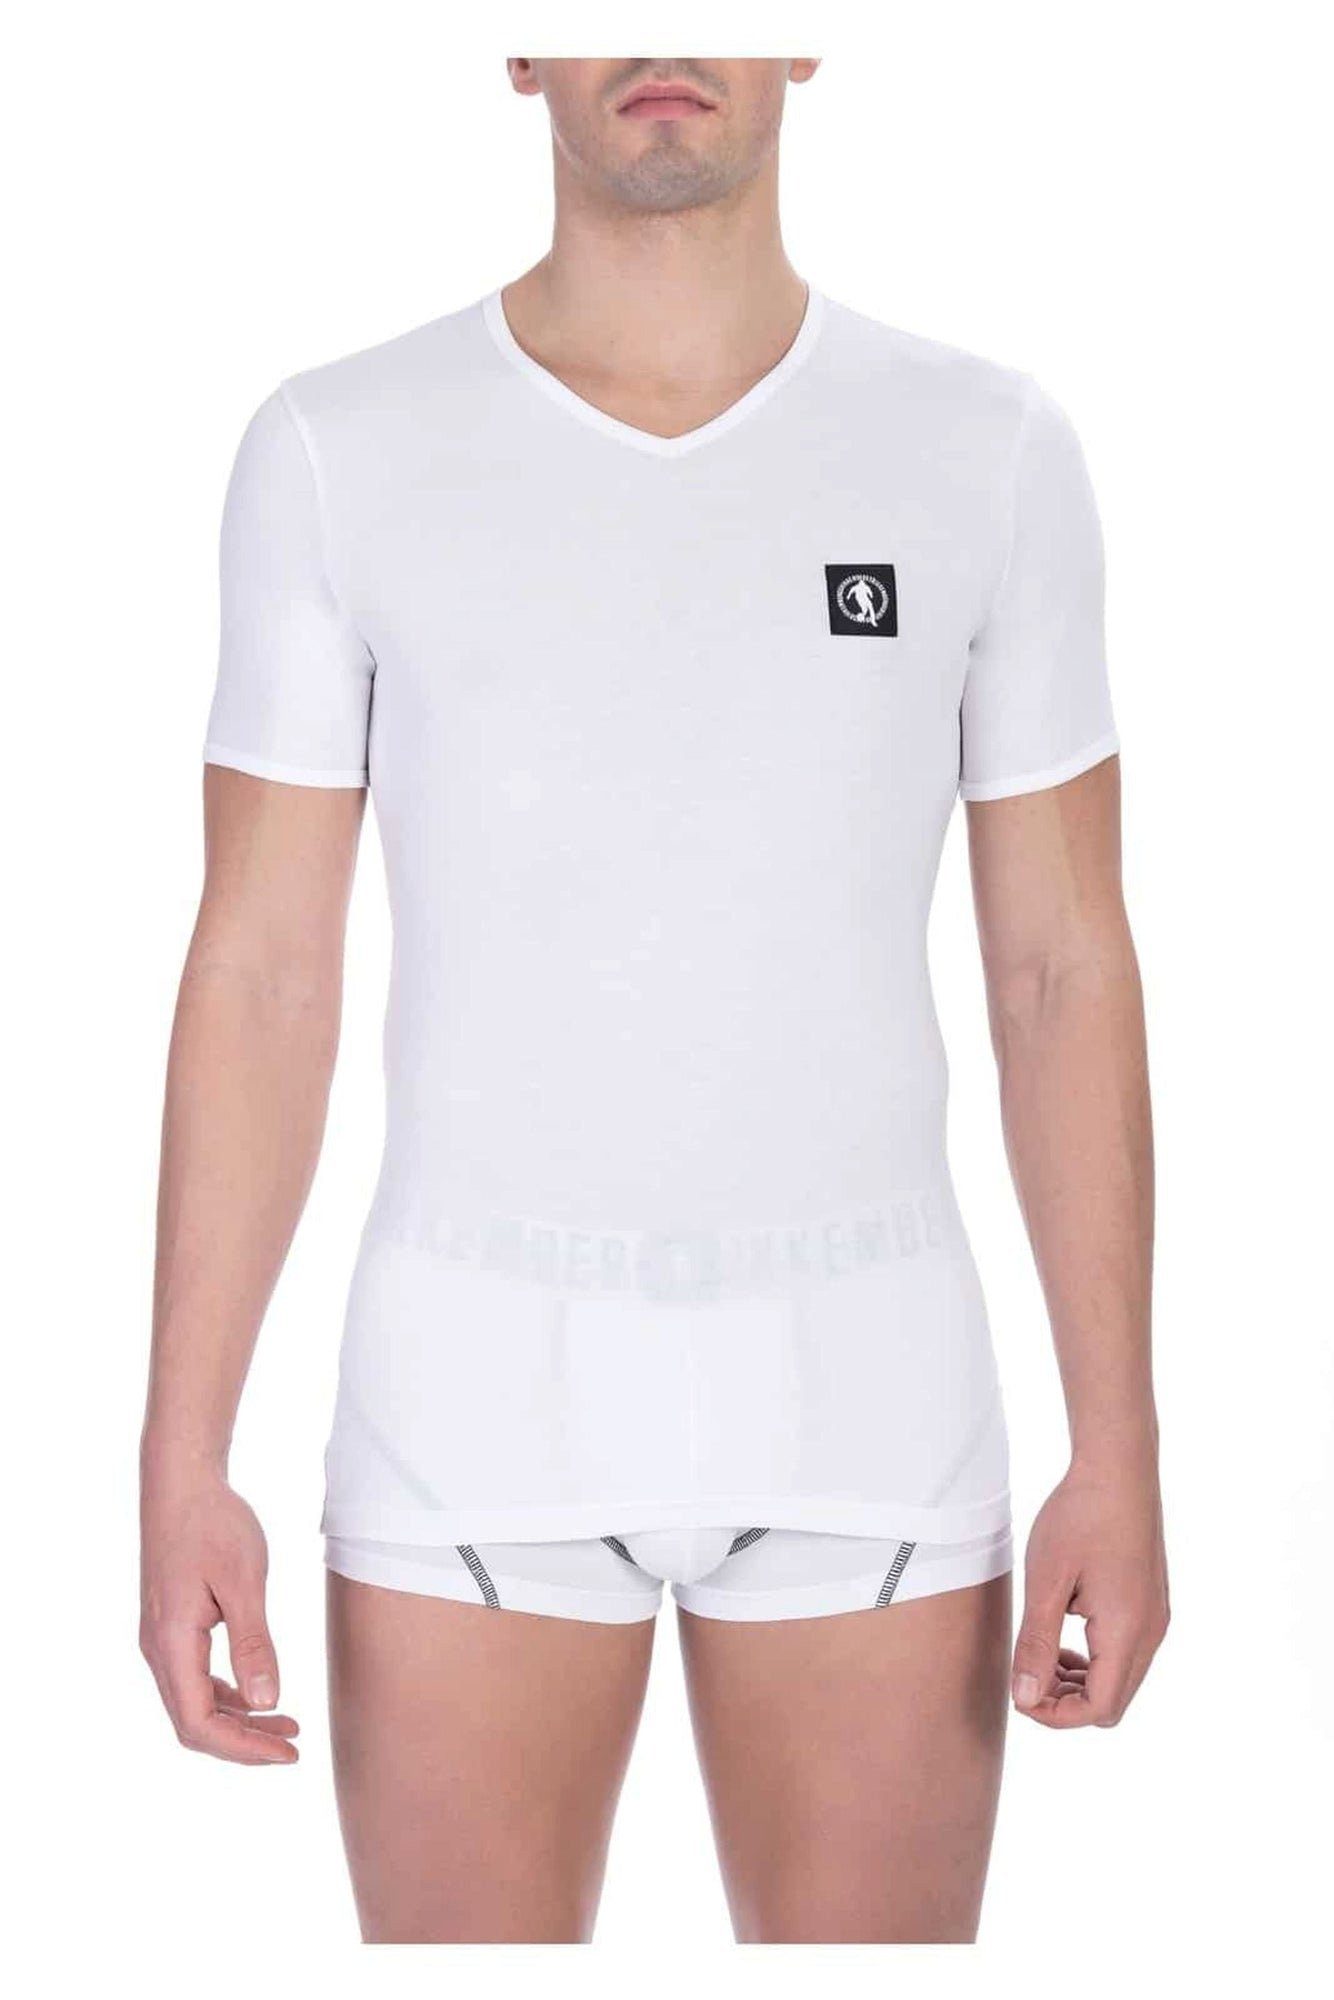 Bikkembergs T-Shirt, 2ei T-Shirts Pack, Weiß, V-Ausschnitt (2er Pack, 2ei T-Shirts)